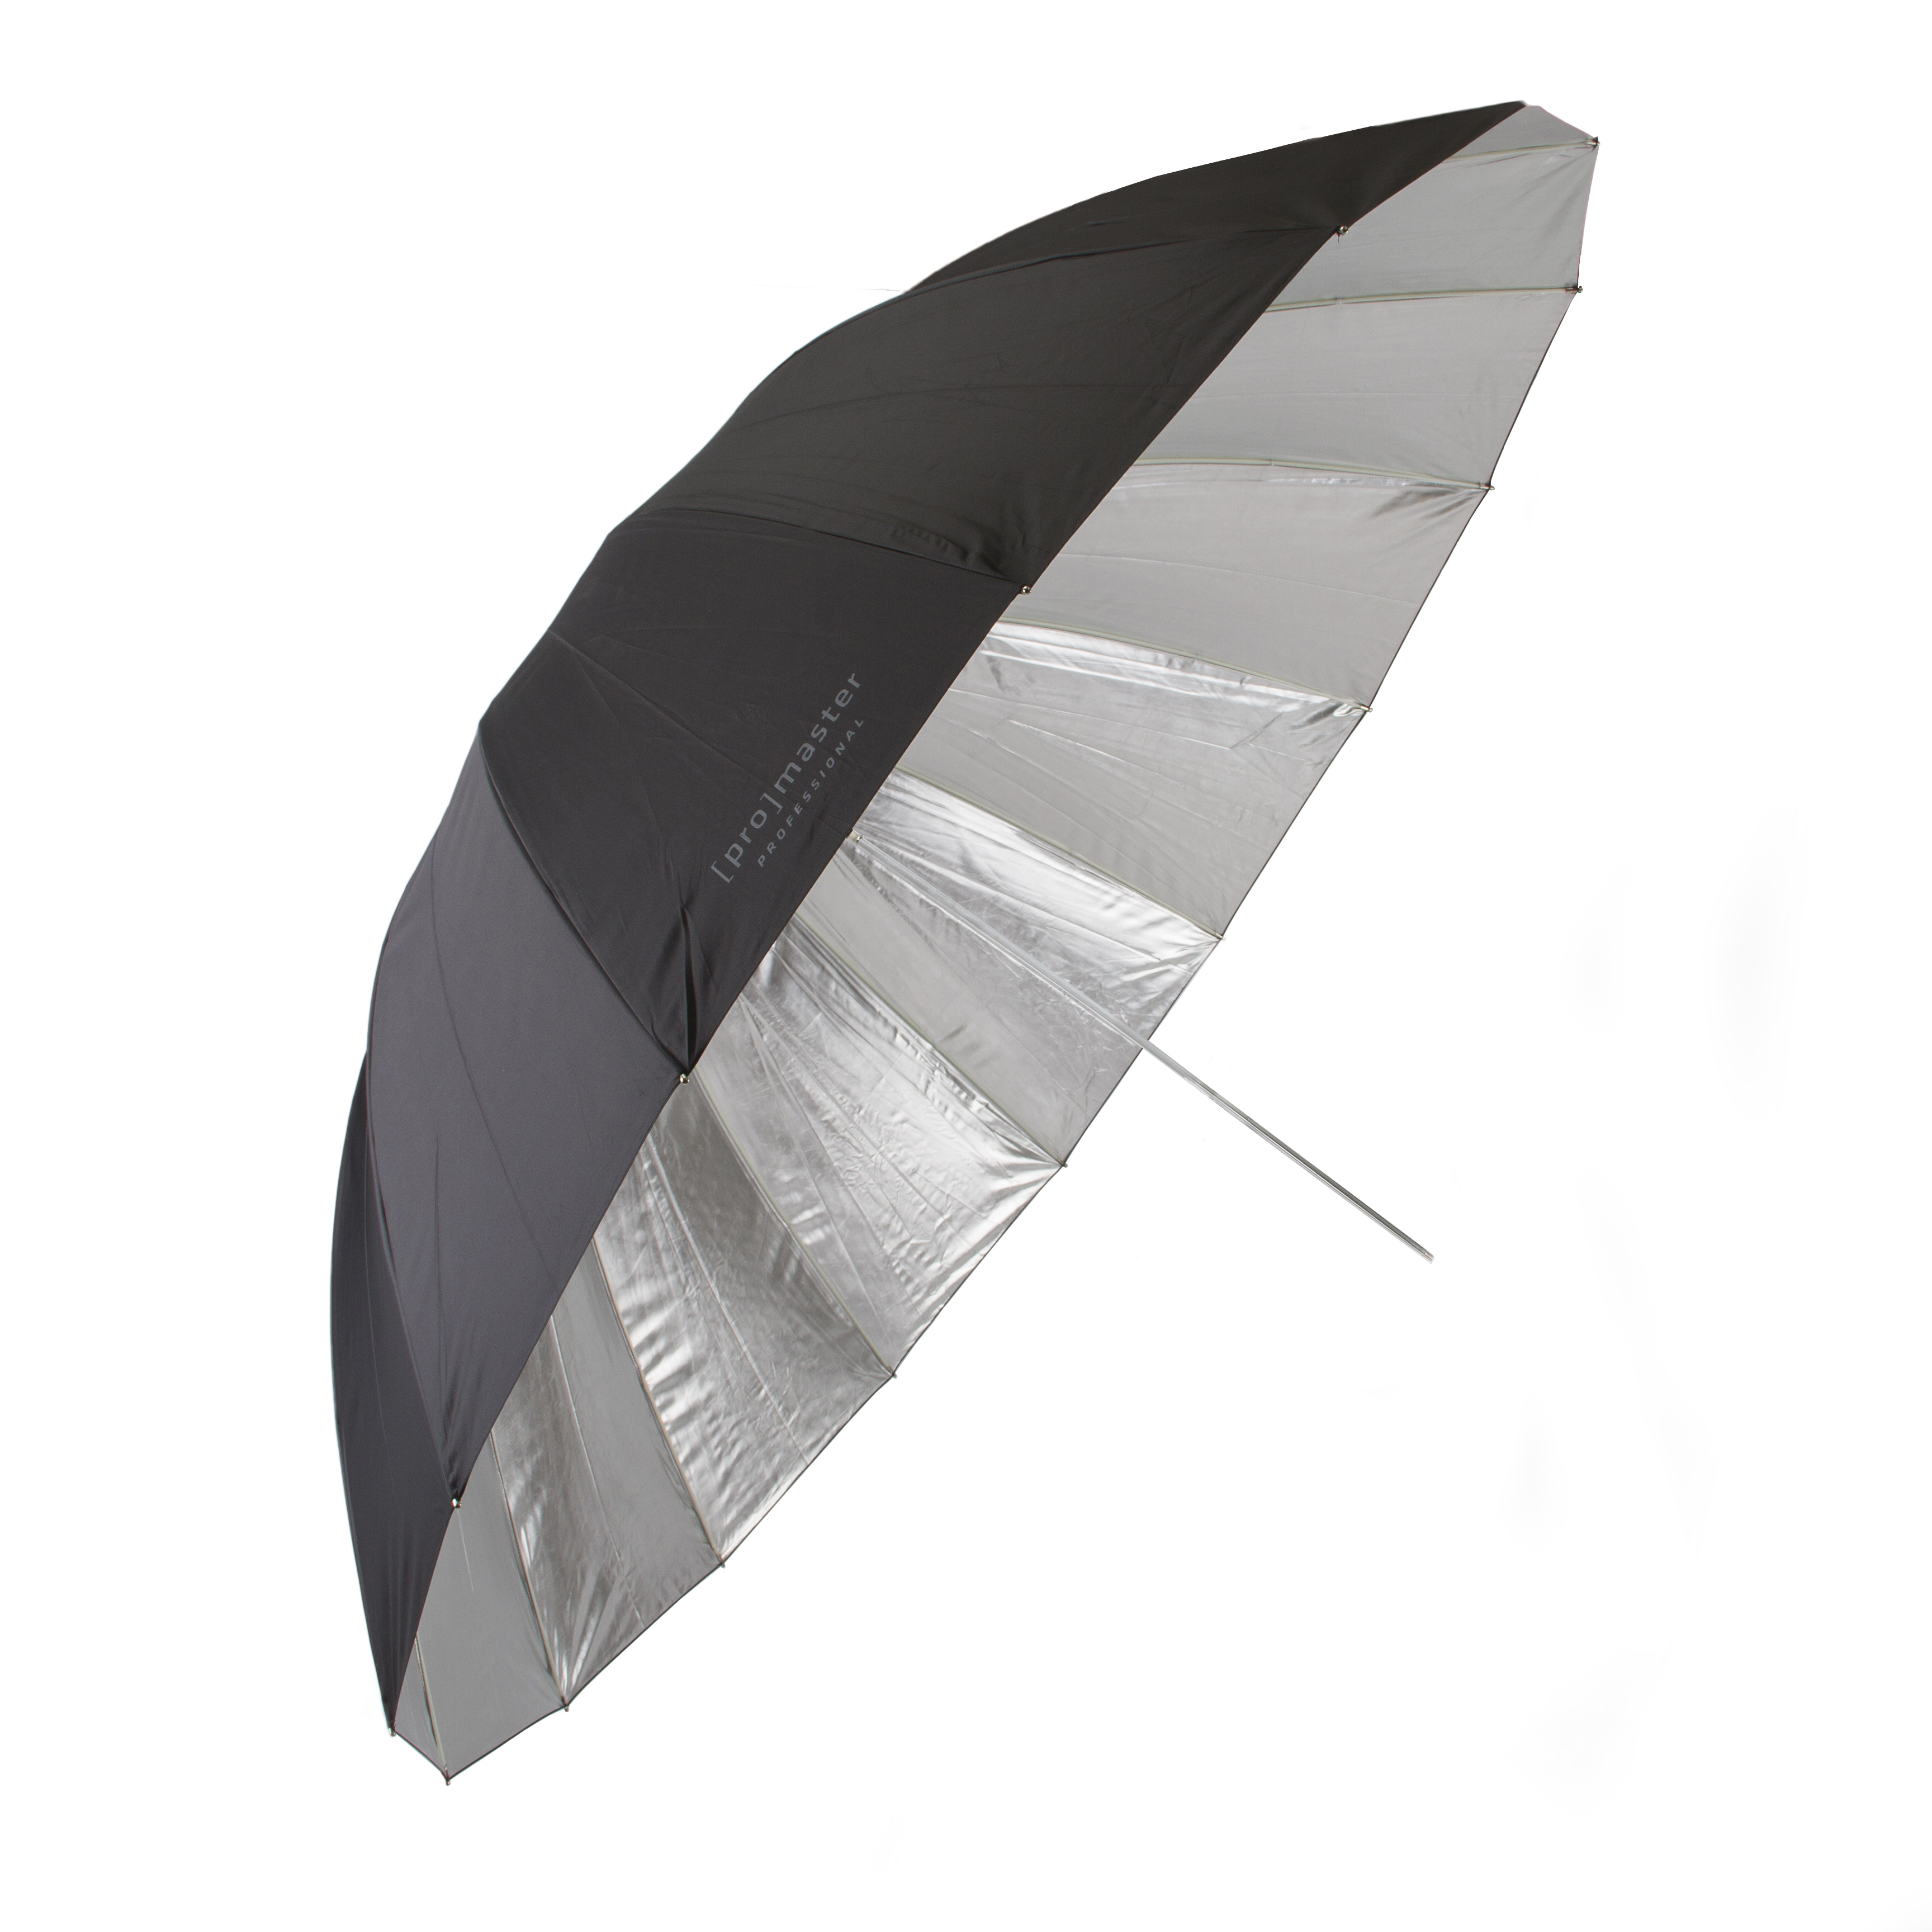 Promaster 9433 72" Black/Silver Professional Umbrella